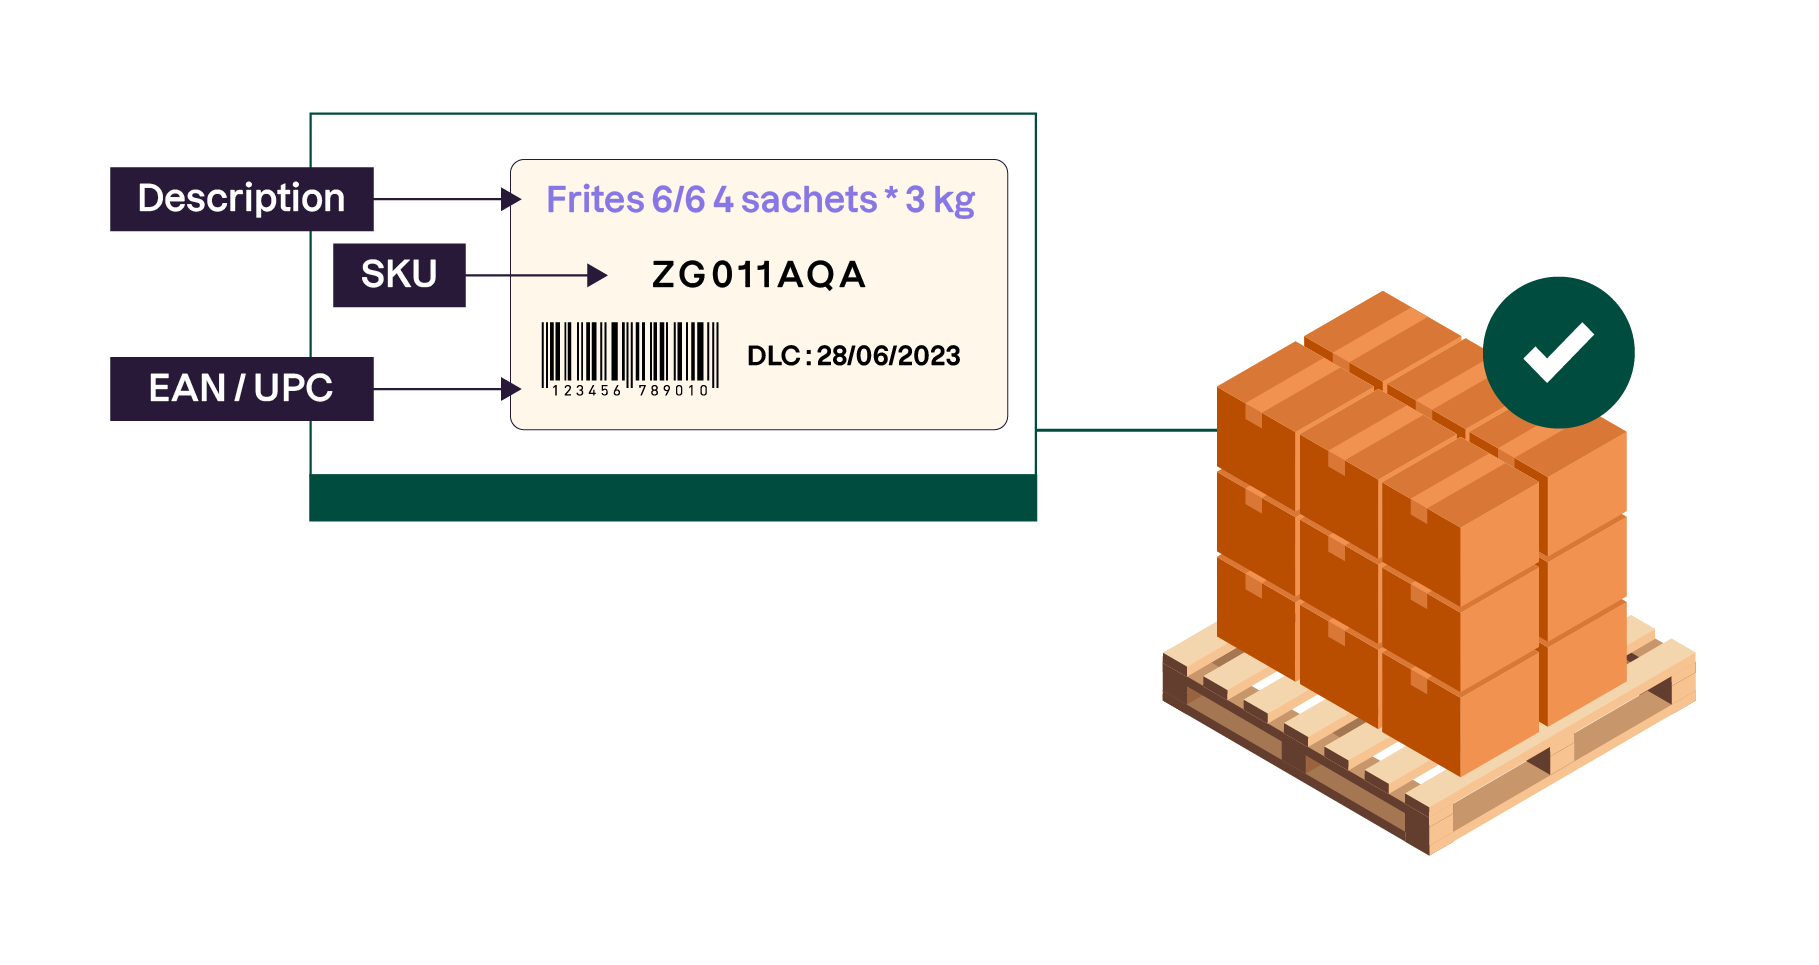 L'étiquette contient une description de la marchandise, son SKU et son EAN/UPC.